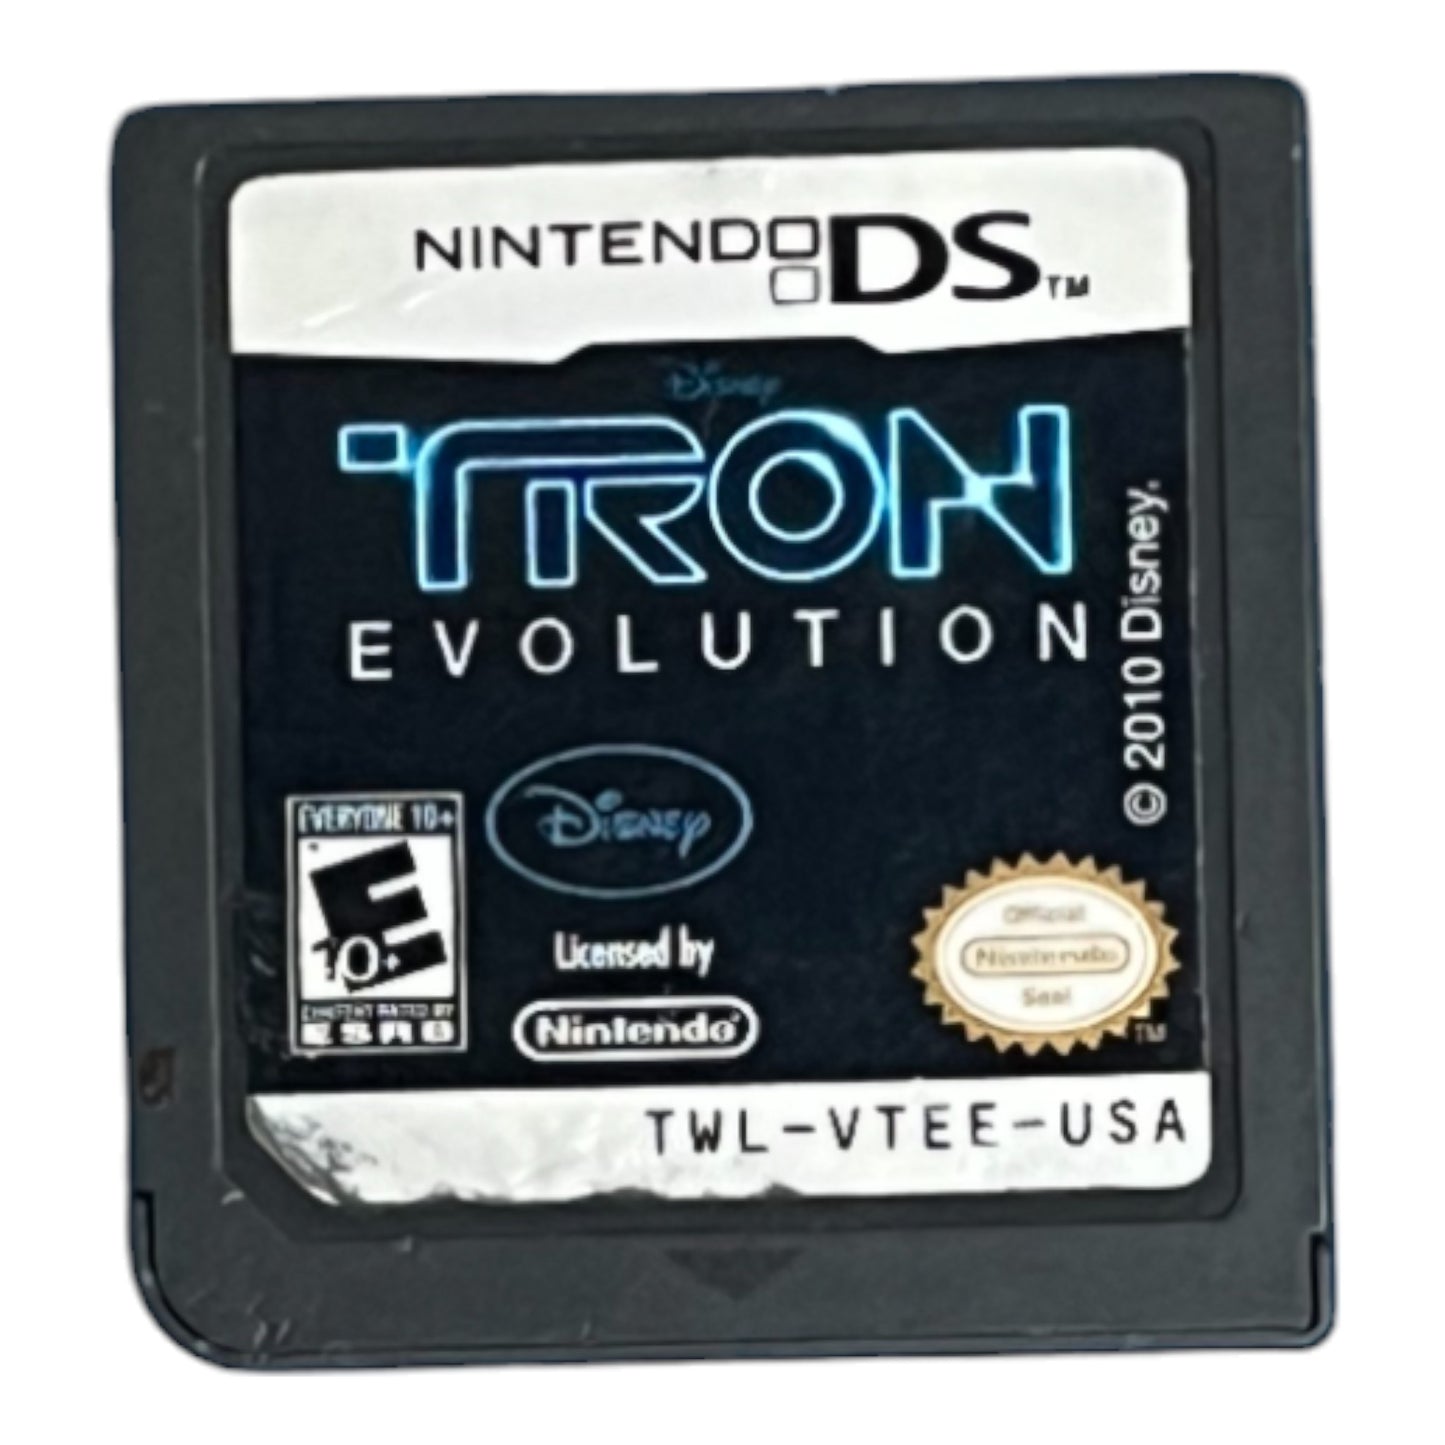 Tron Evolution (DS)